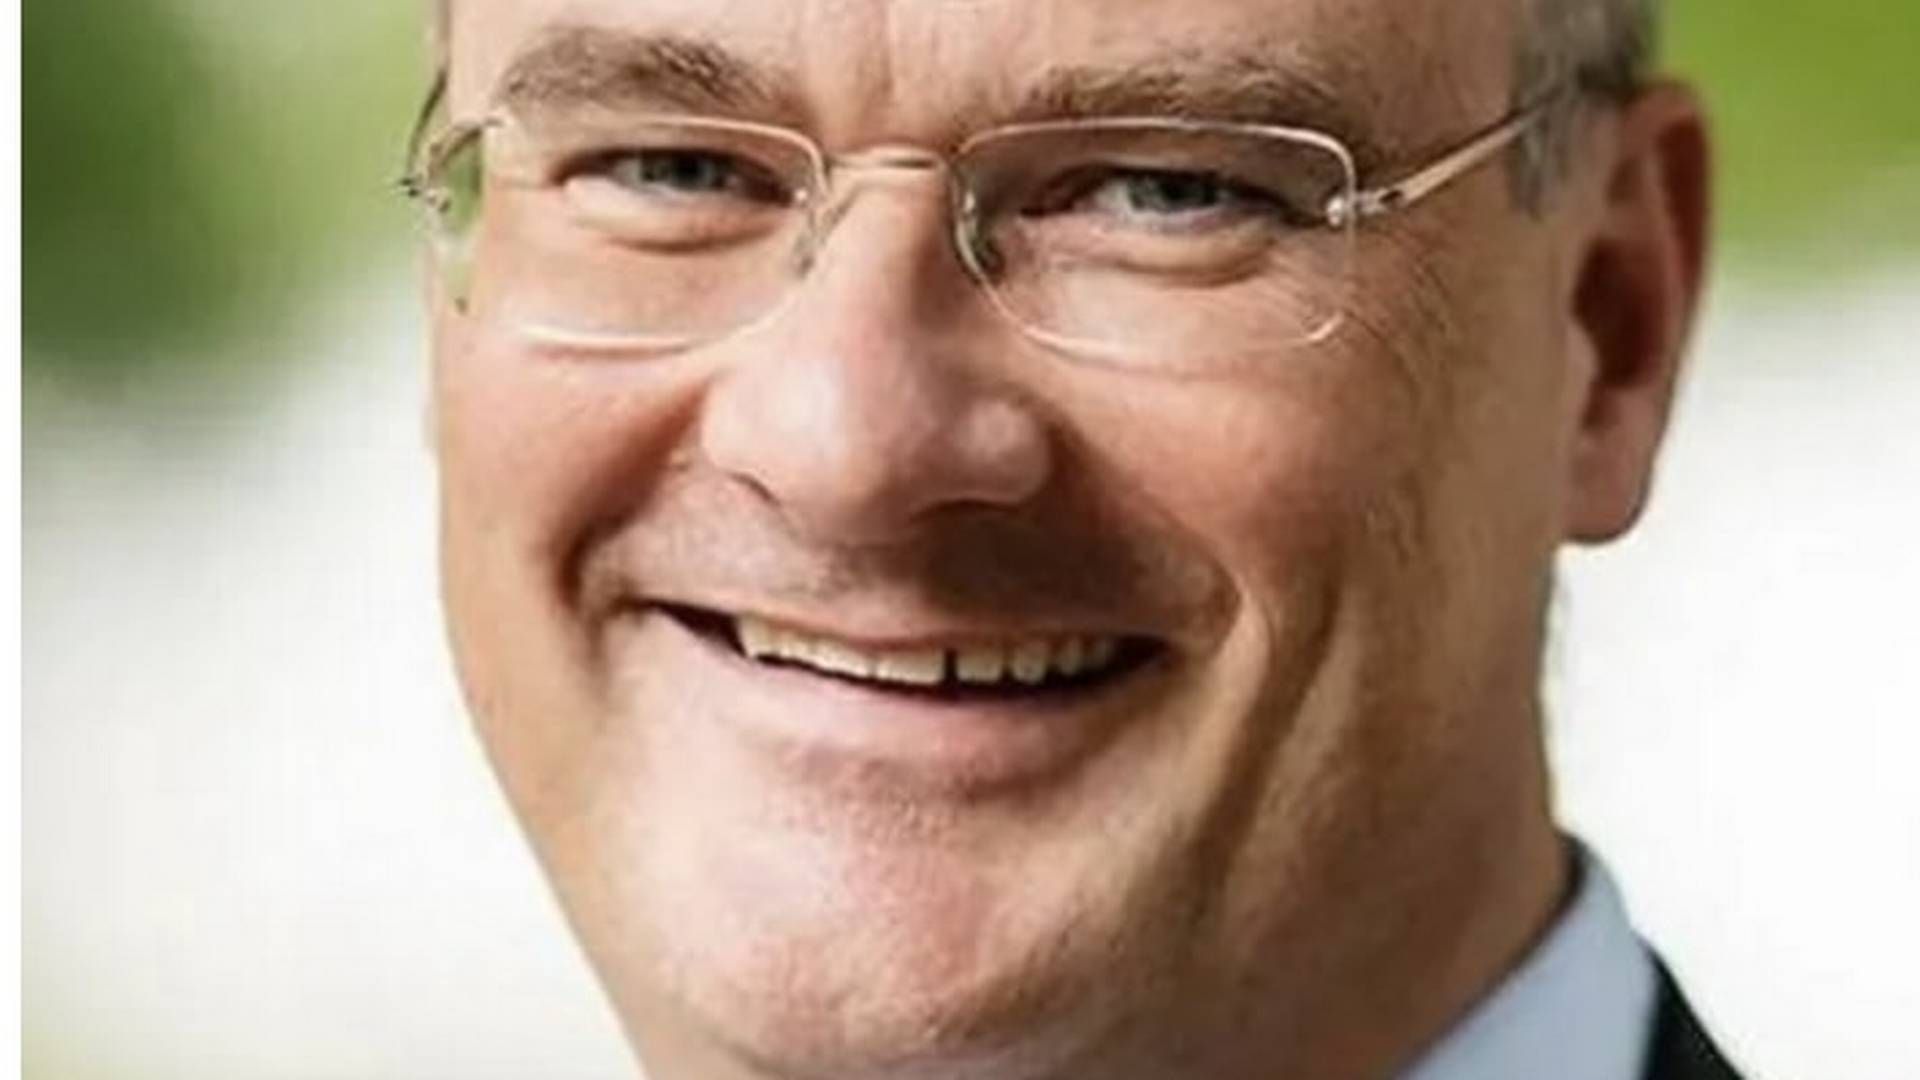 VIL NORDOVER: Jan Frich vil videre etter knapt et år ved Diakonhjemmet sykehus. | Foto: Helse Sør-Øst/Diakonhjemmet